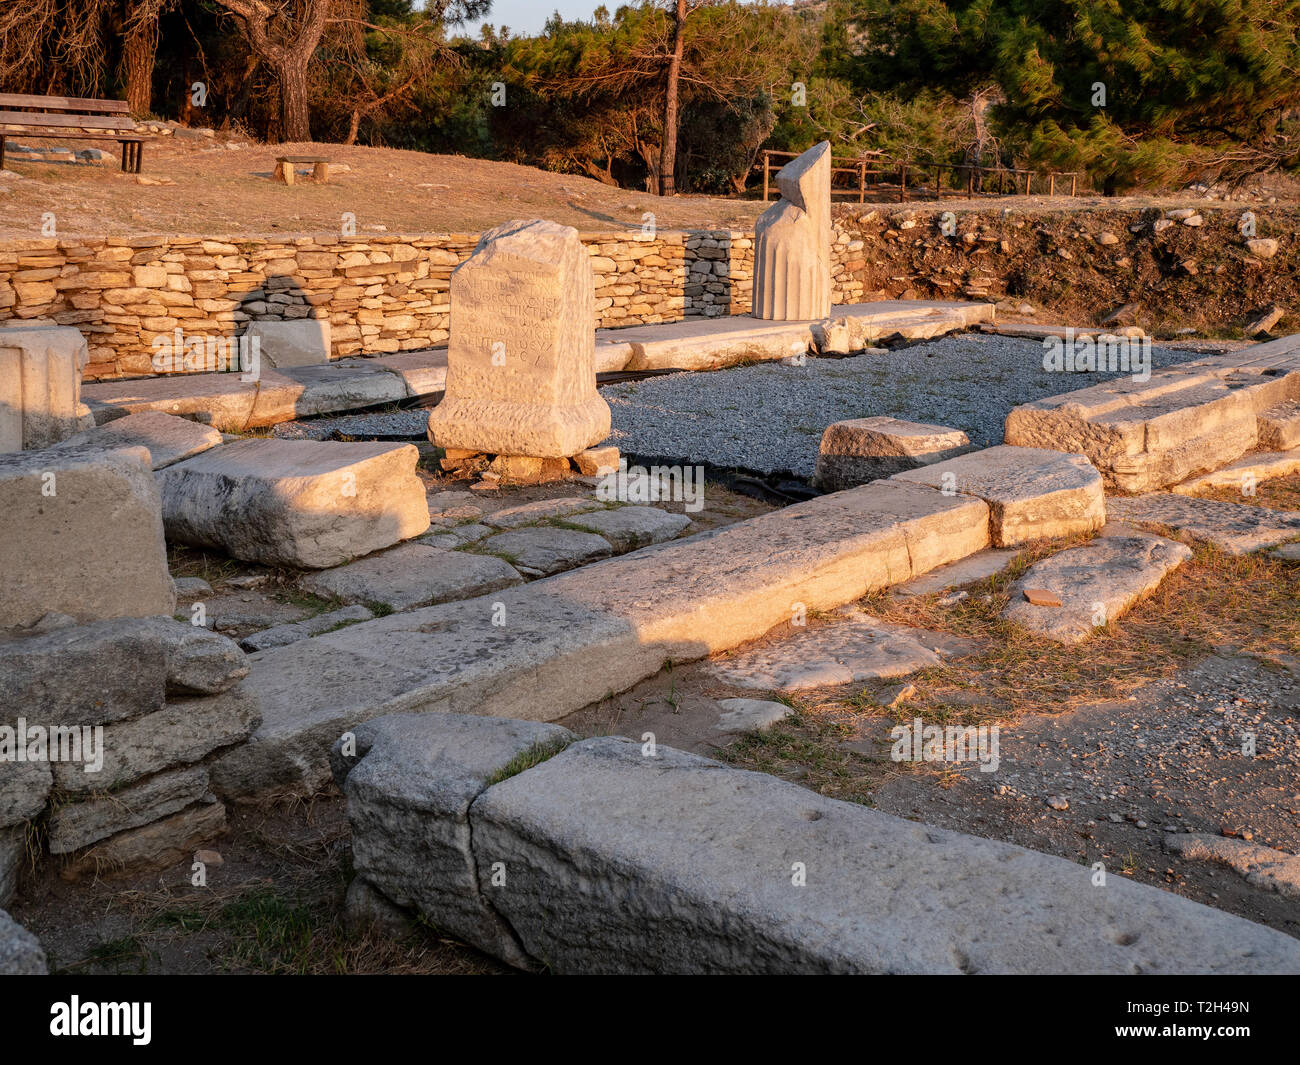 Alte Ruinen und Steine in der alten griechischen Sprache an der archäologischen Stätte in der Nähe von Aliki Marmor Hafen auf der Insel Thasos, Griechenland geschnitzt Stockfoto